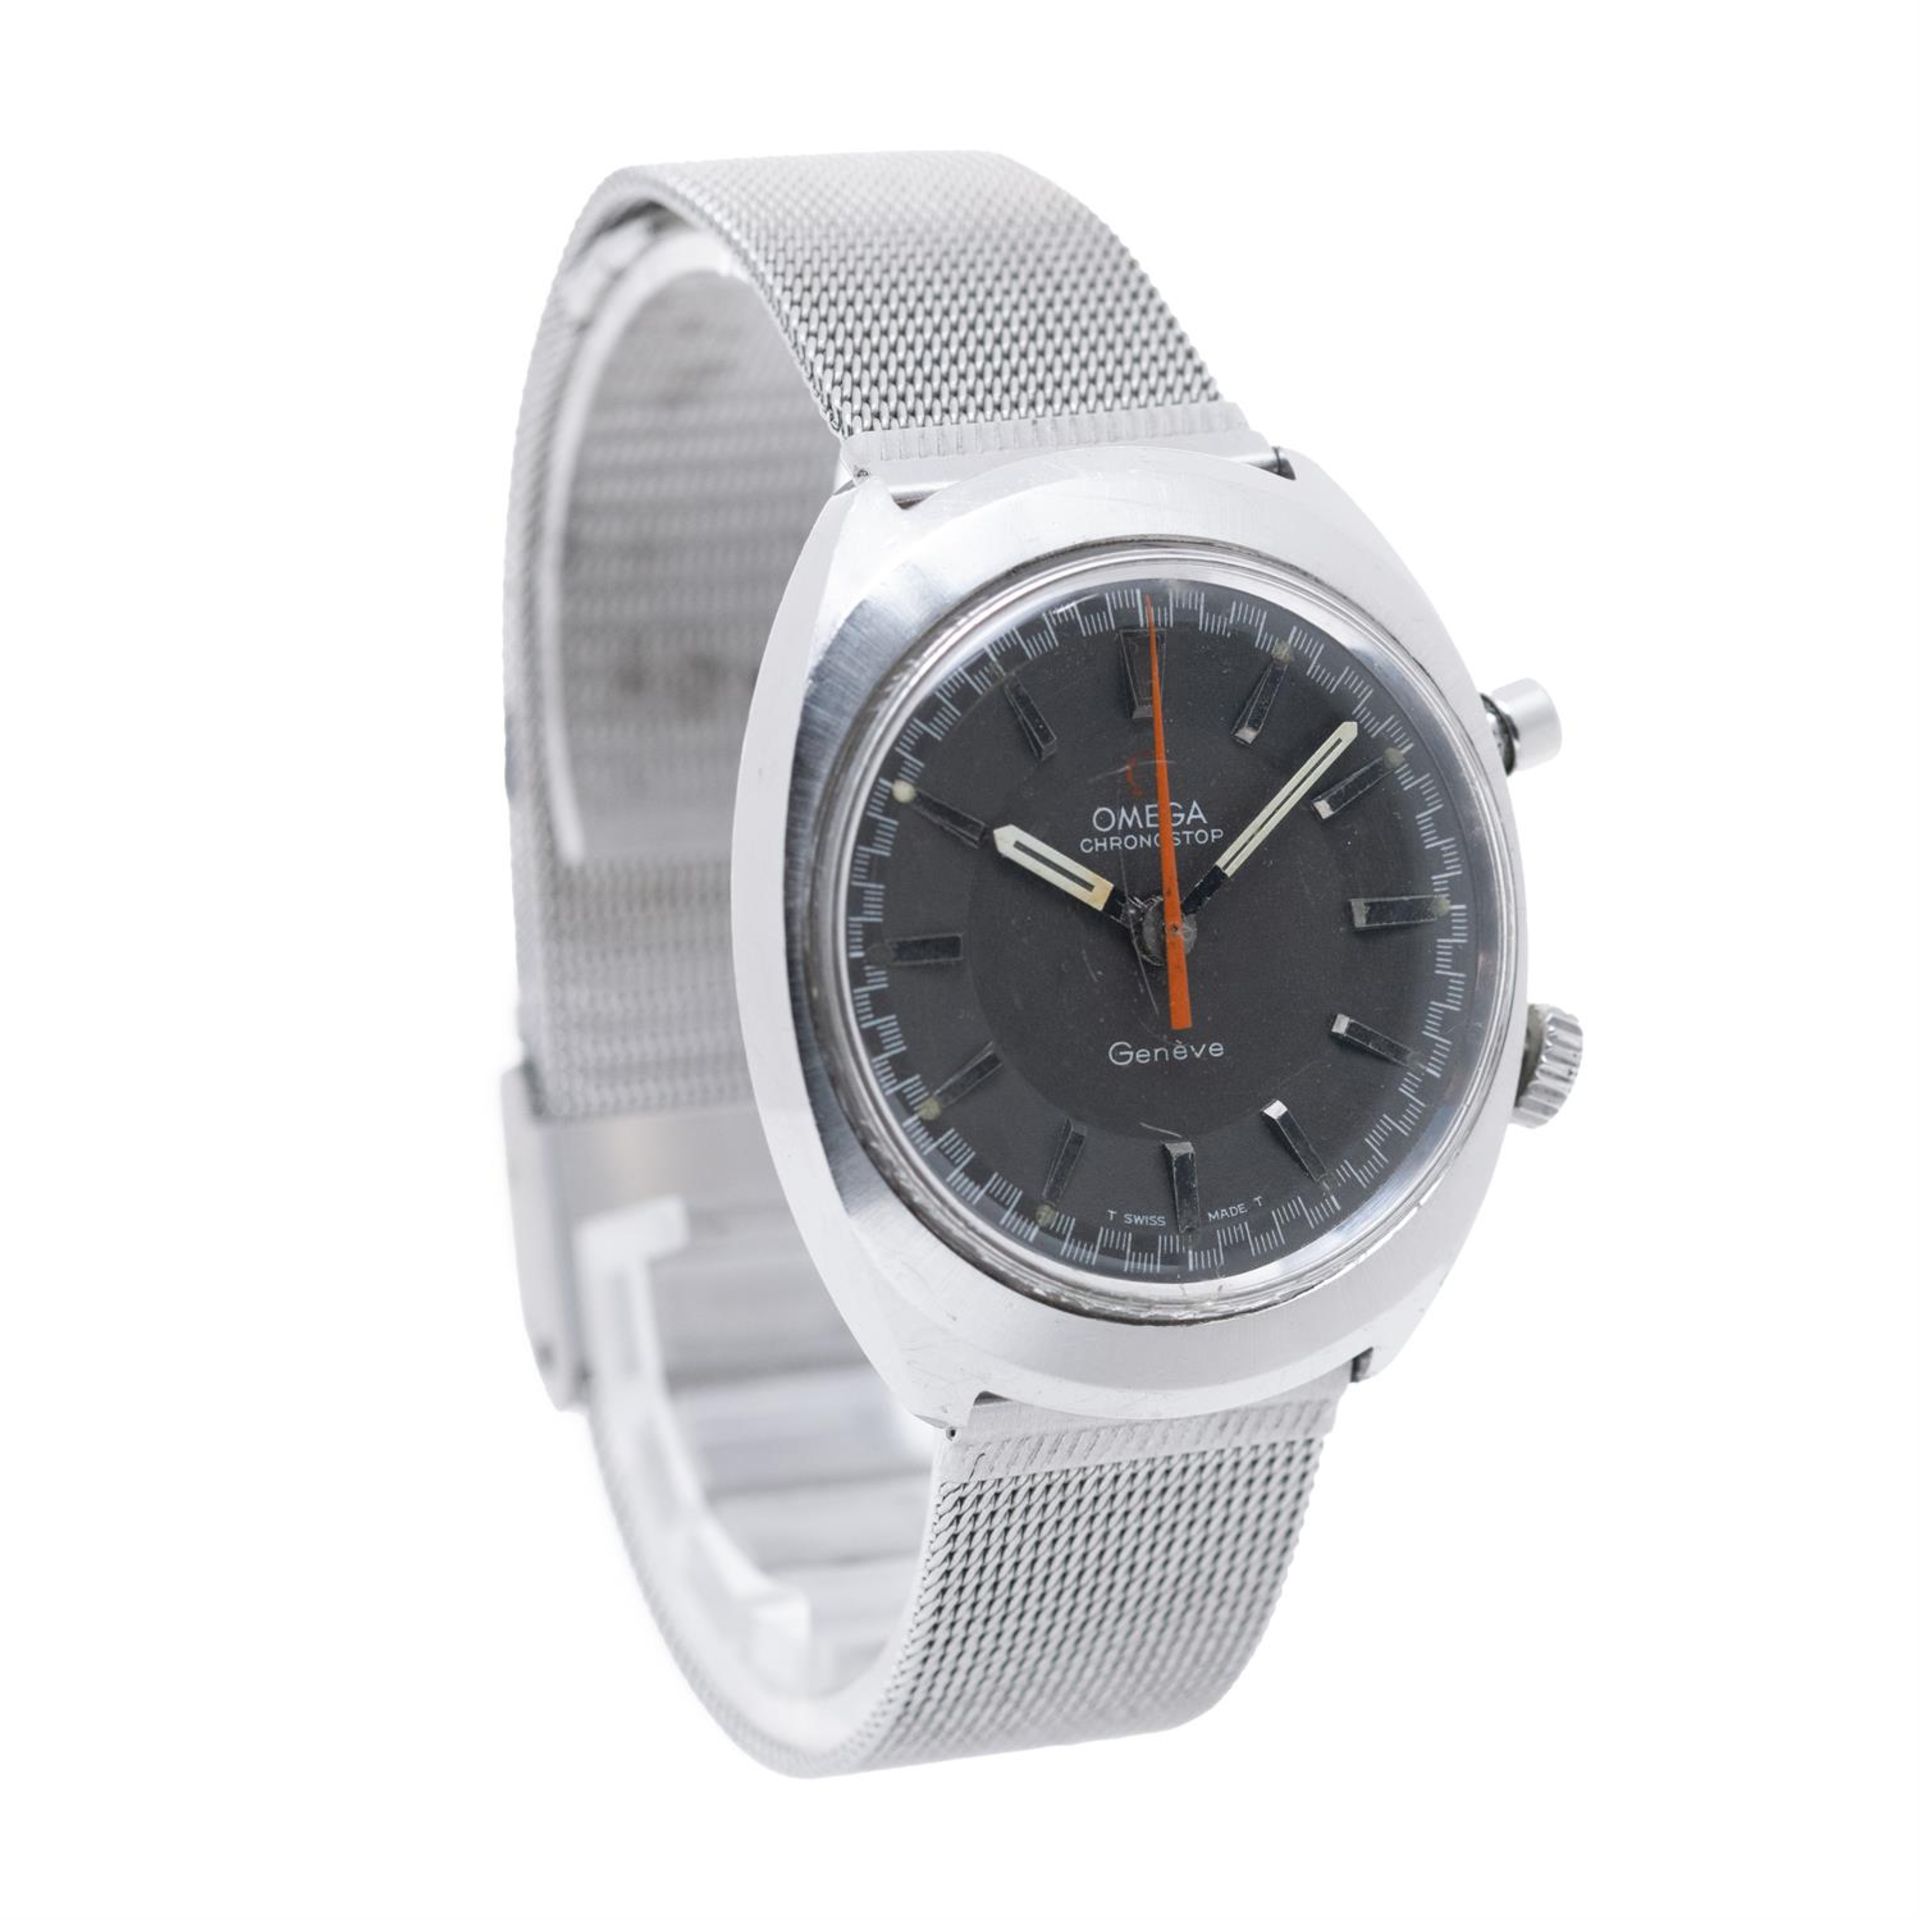 1969 Omega Chronostop Bracelet Watch - Image 3 of 4